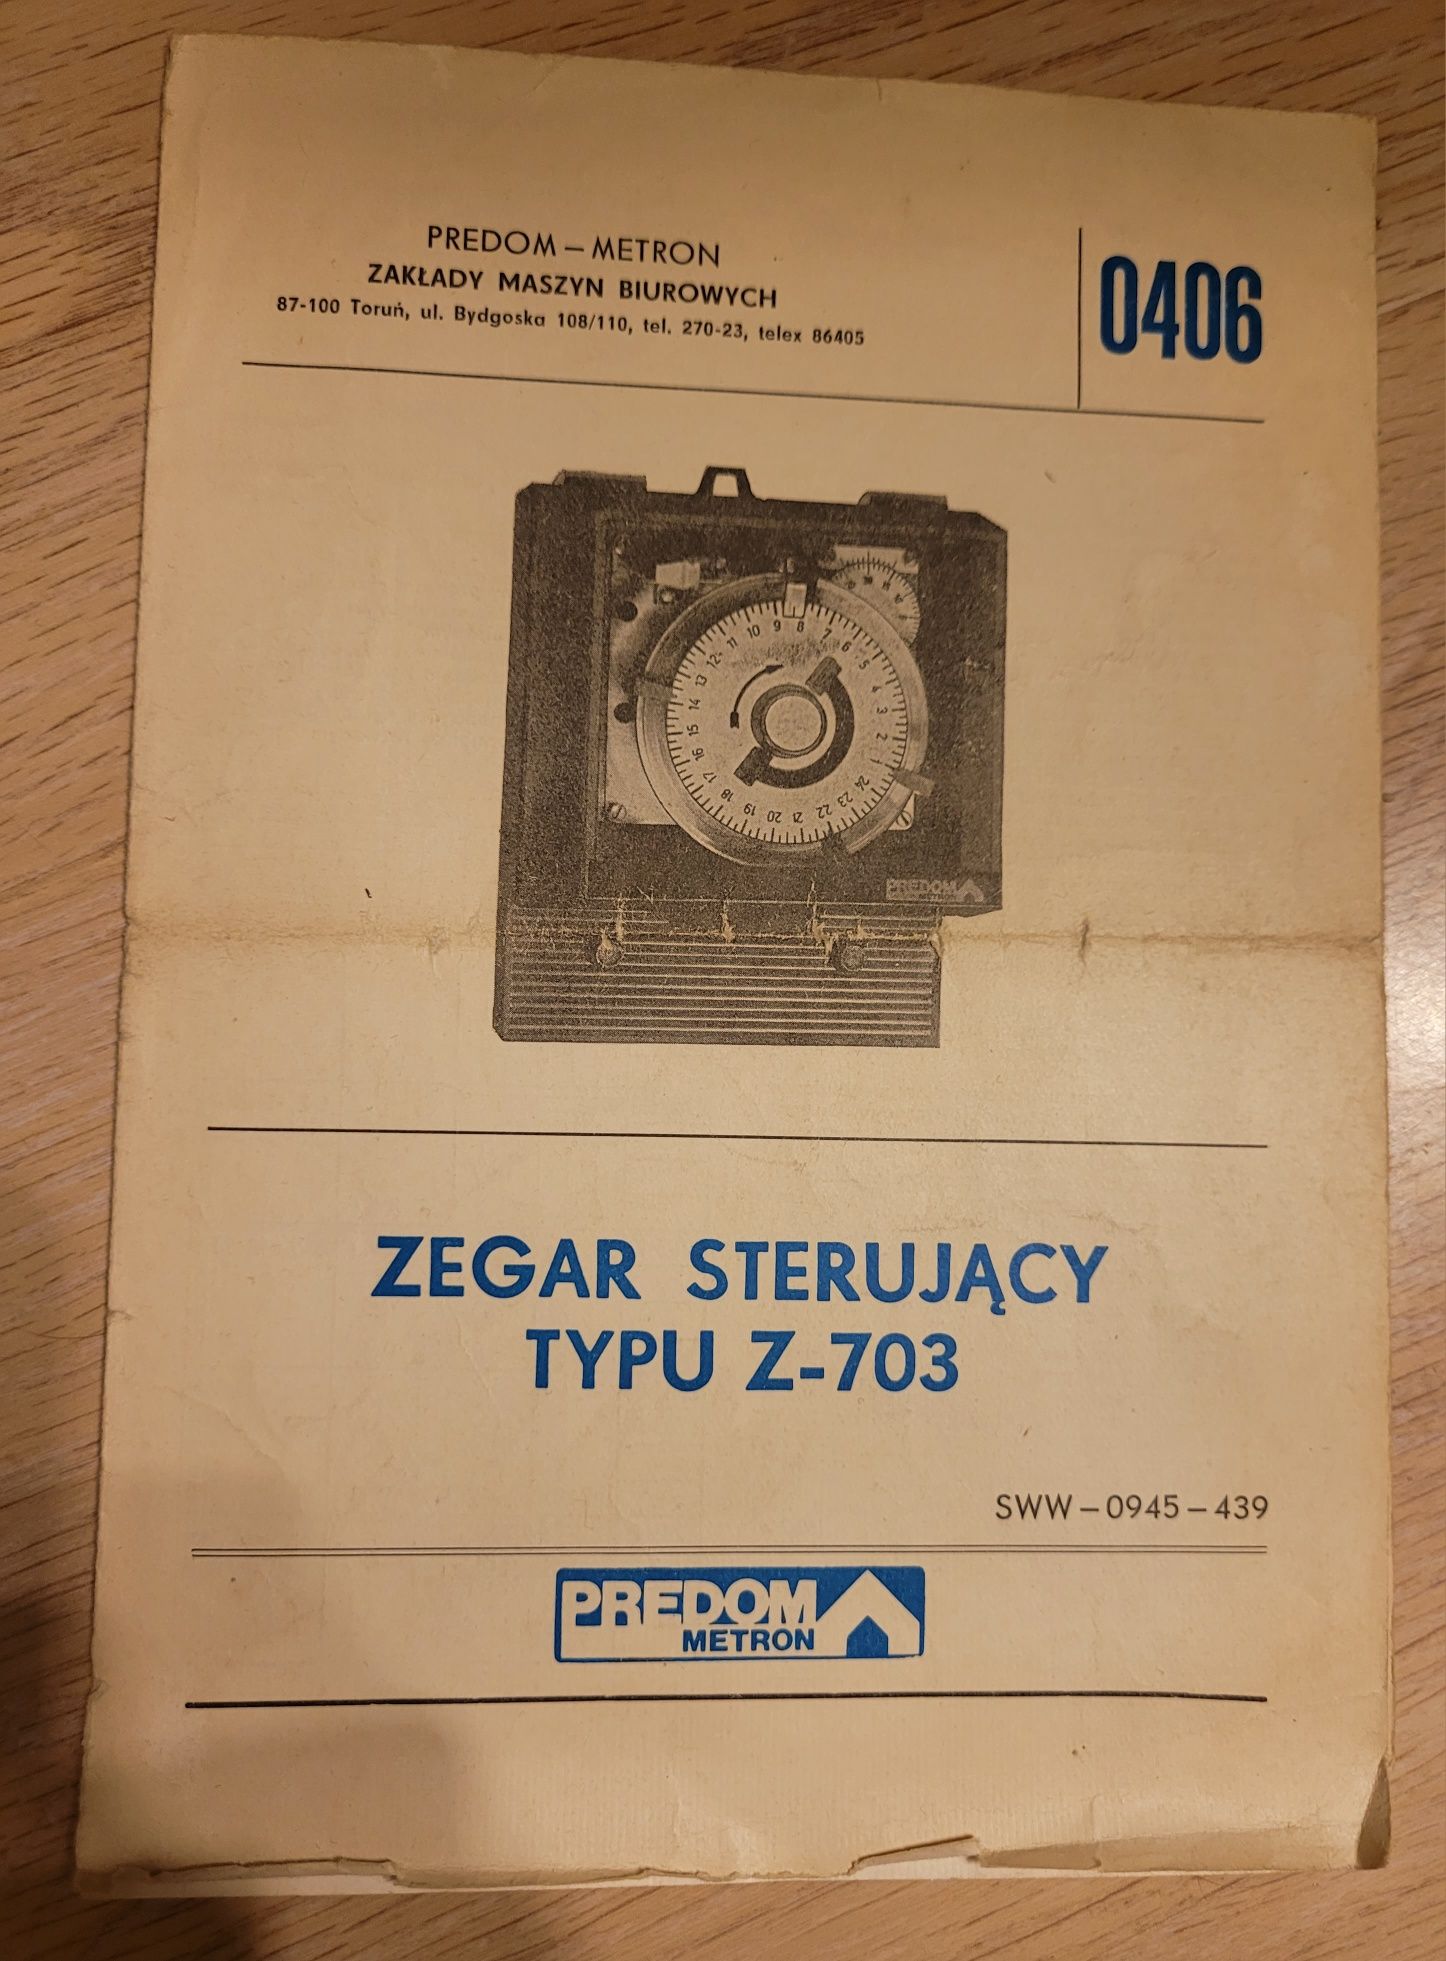 Instrukcja zegar sterujący typu Z-703